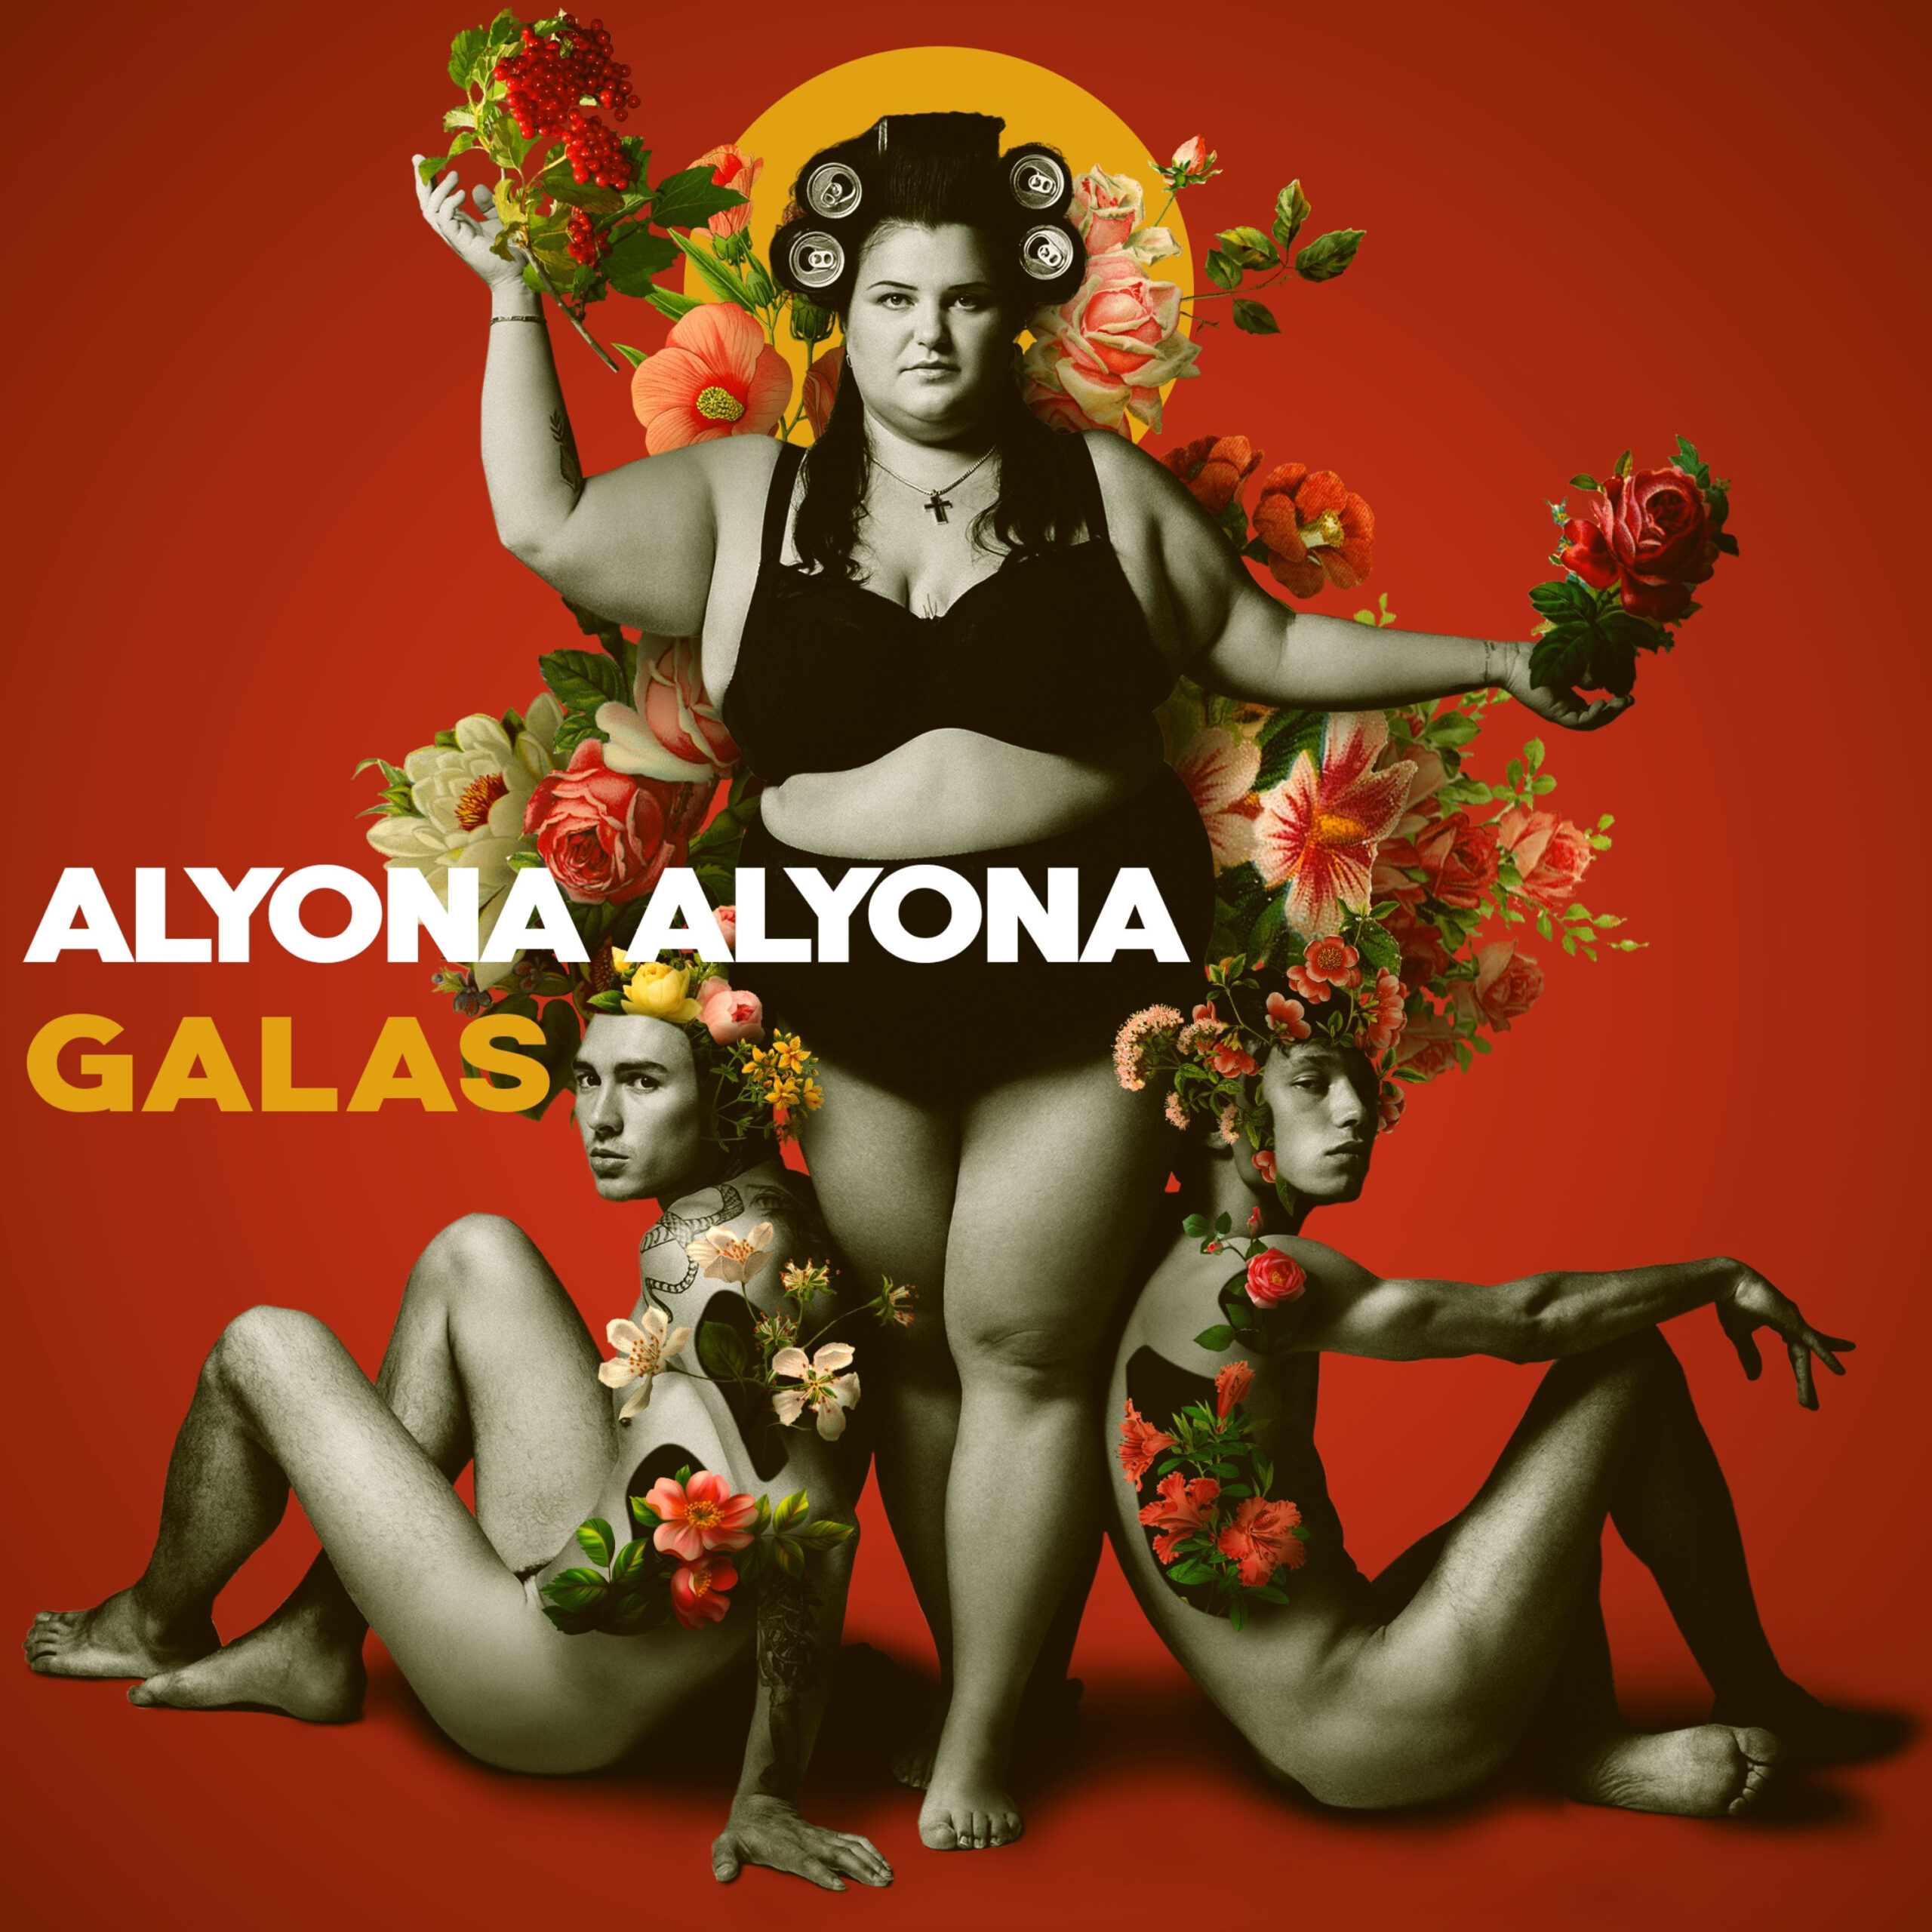  Alyona Alyona estrena su nuevo álbum GALAS